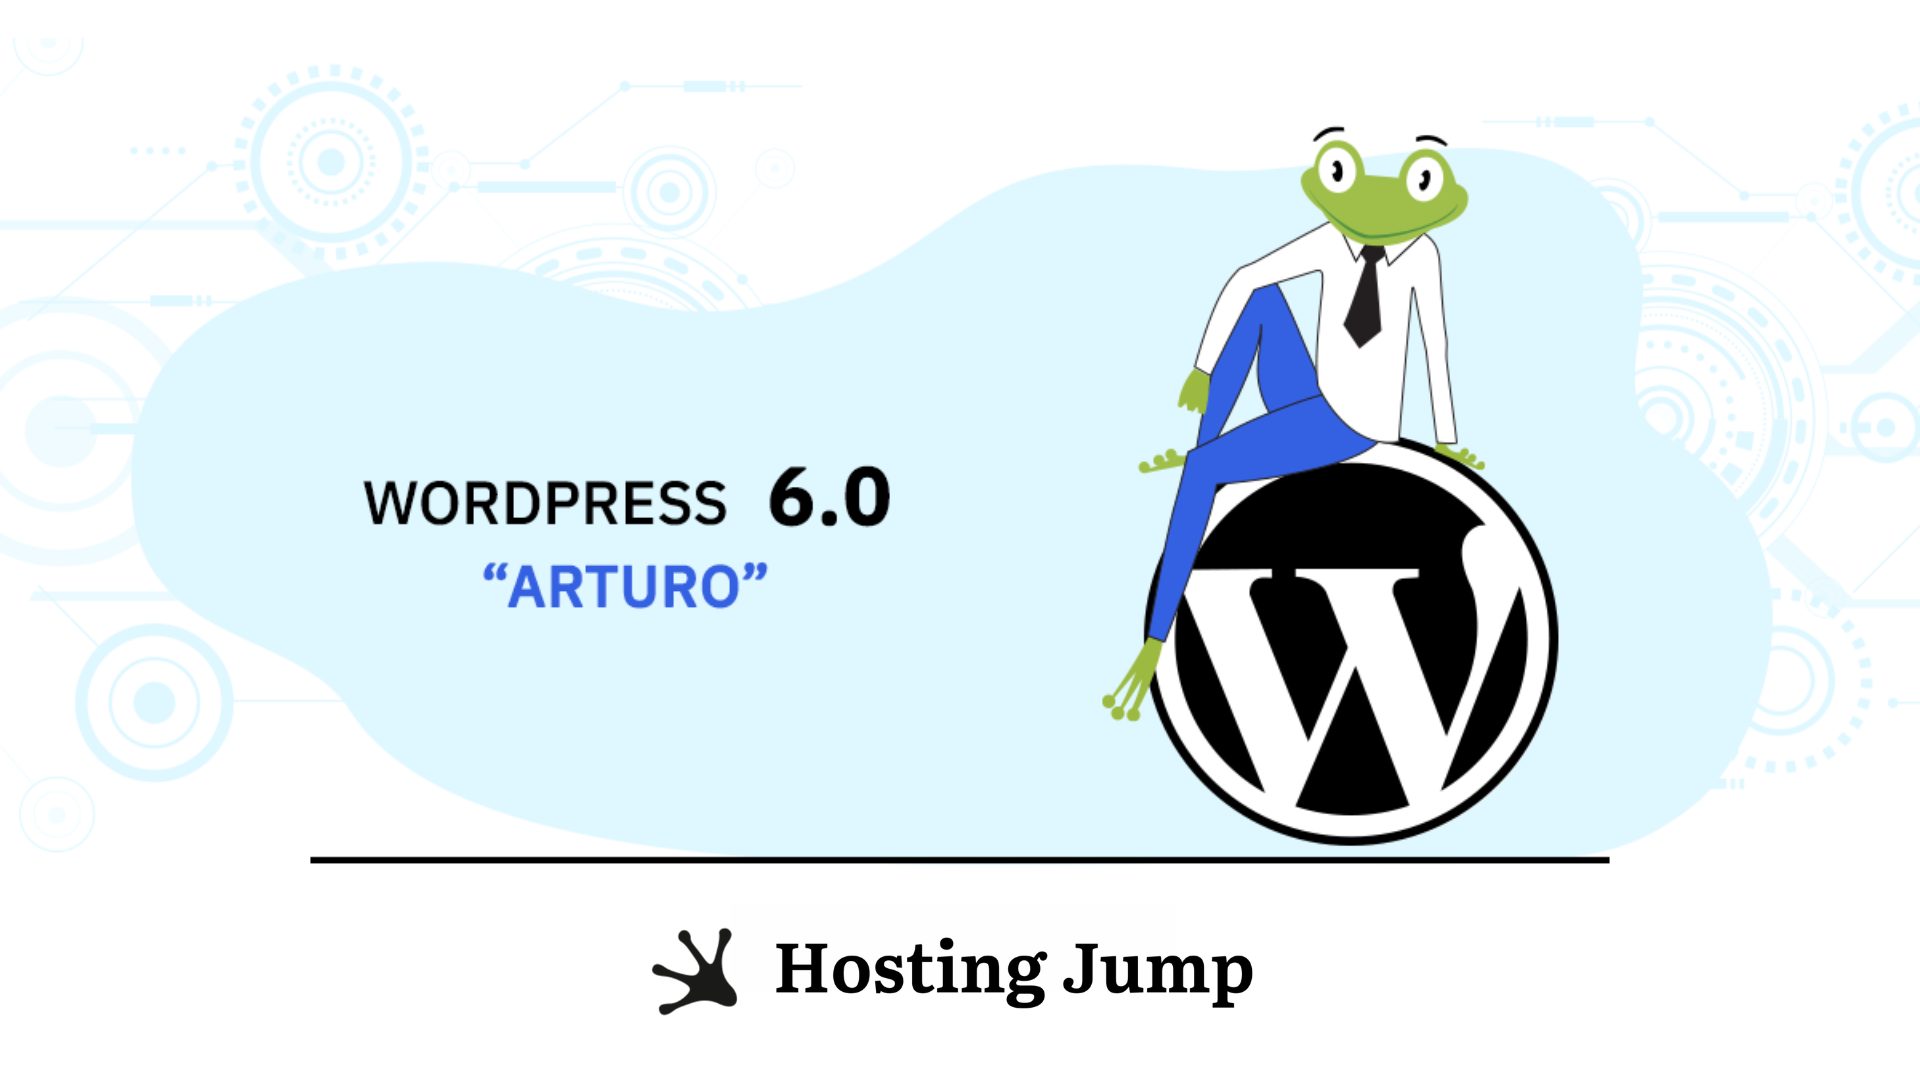 WordPress 6.0 - Arturo -Is Here! What’s New?